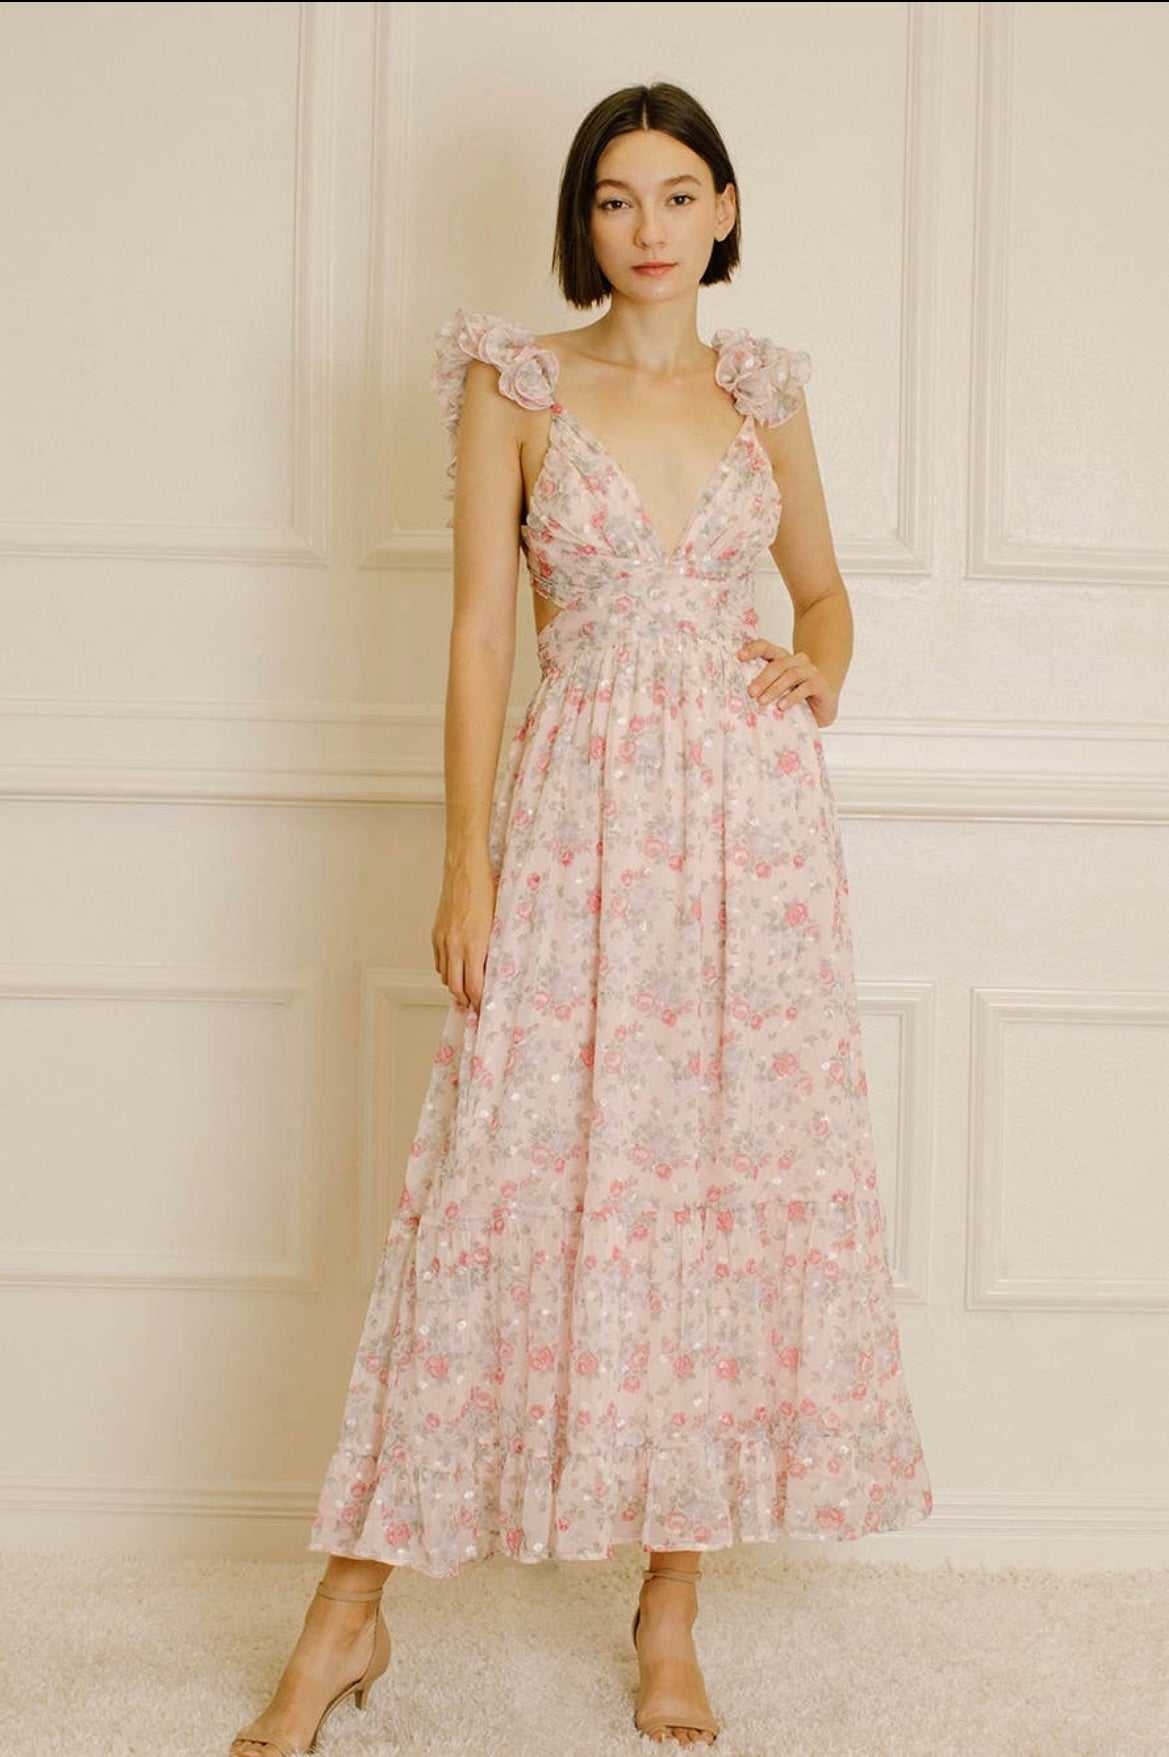 Veronica Floral Maxi Dress